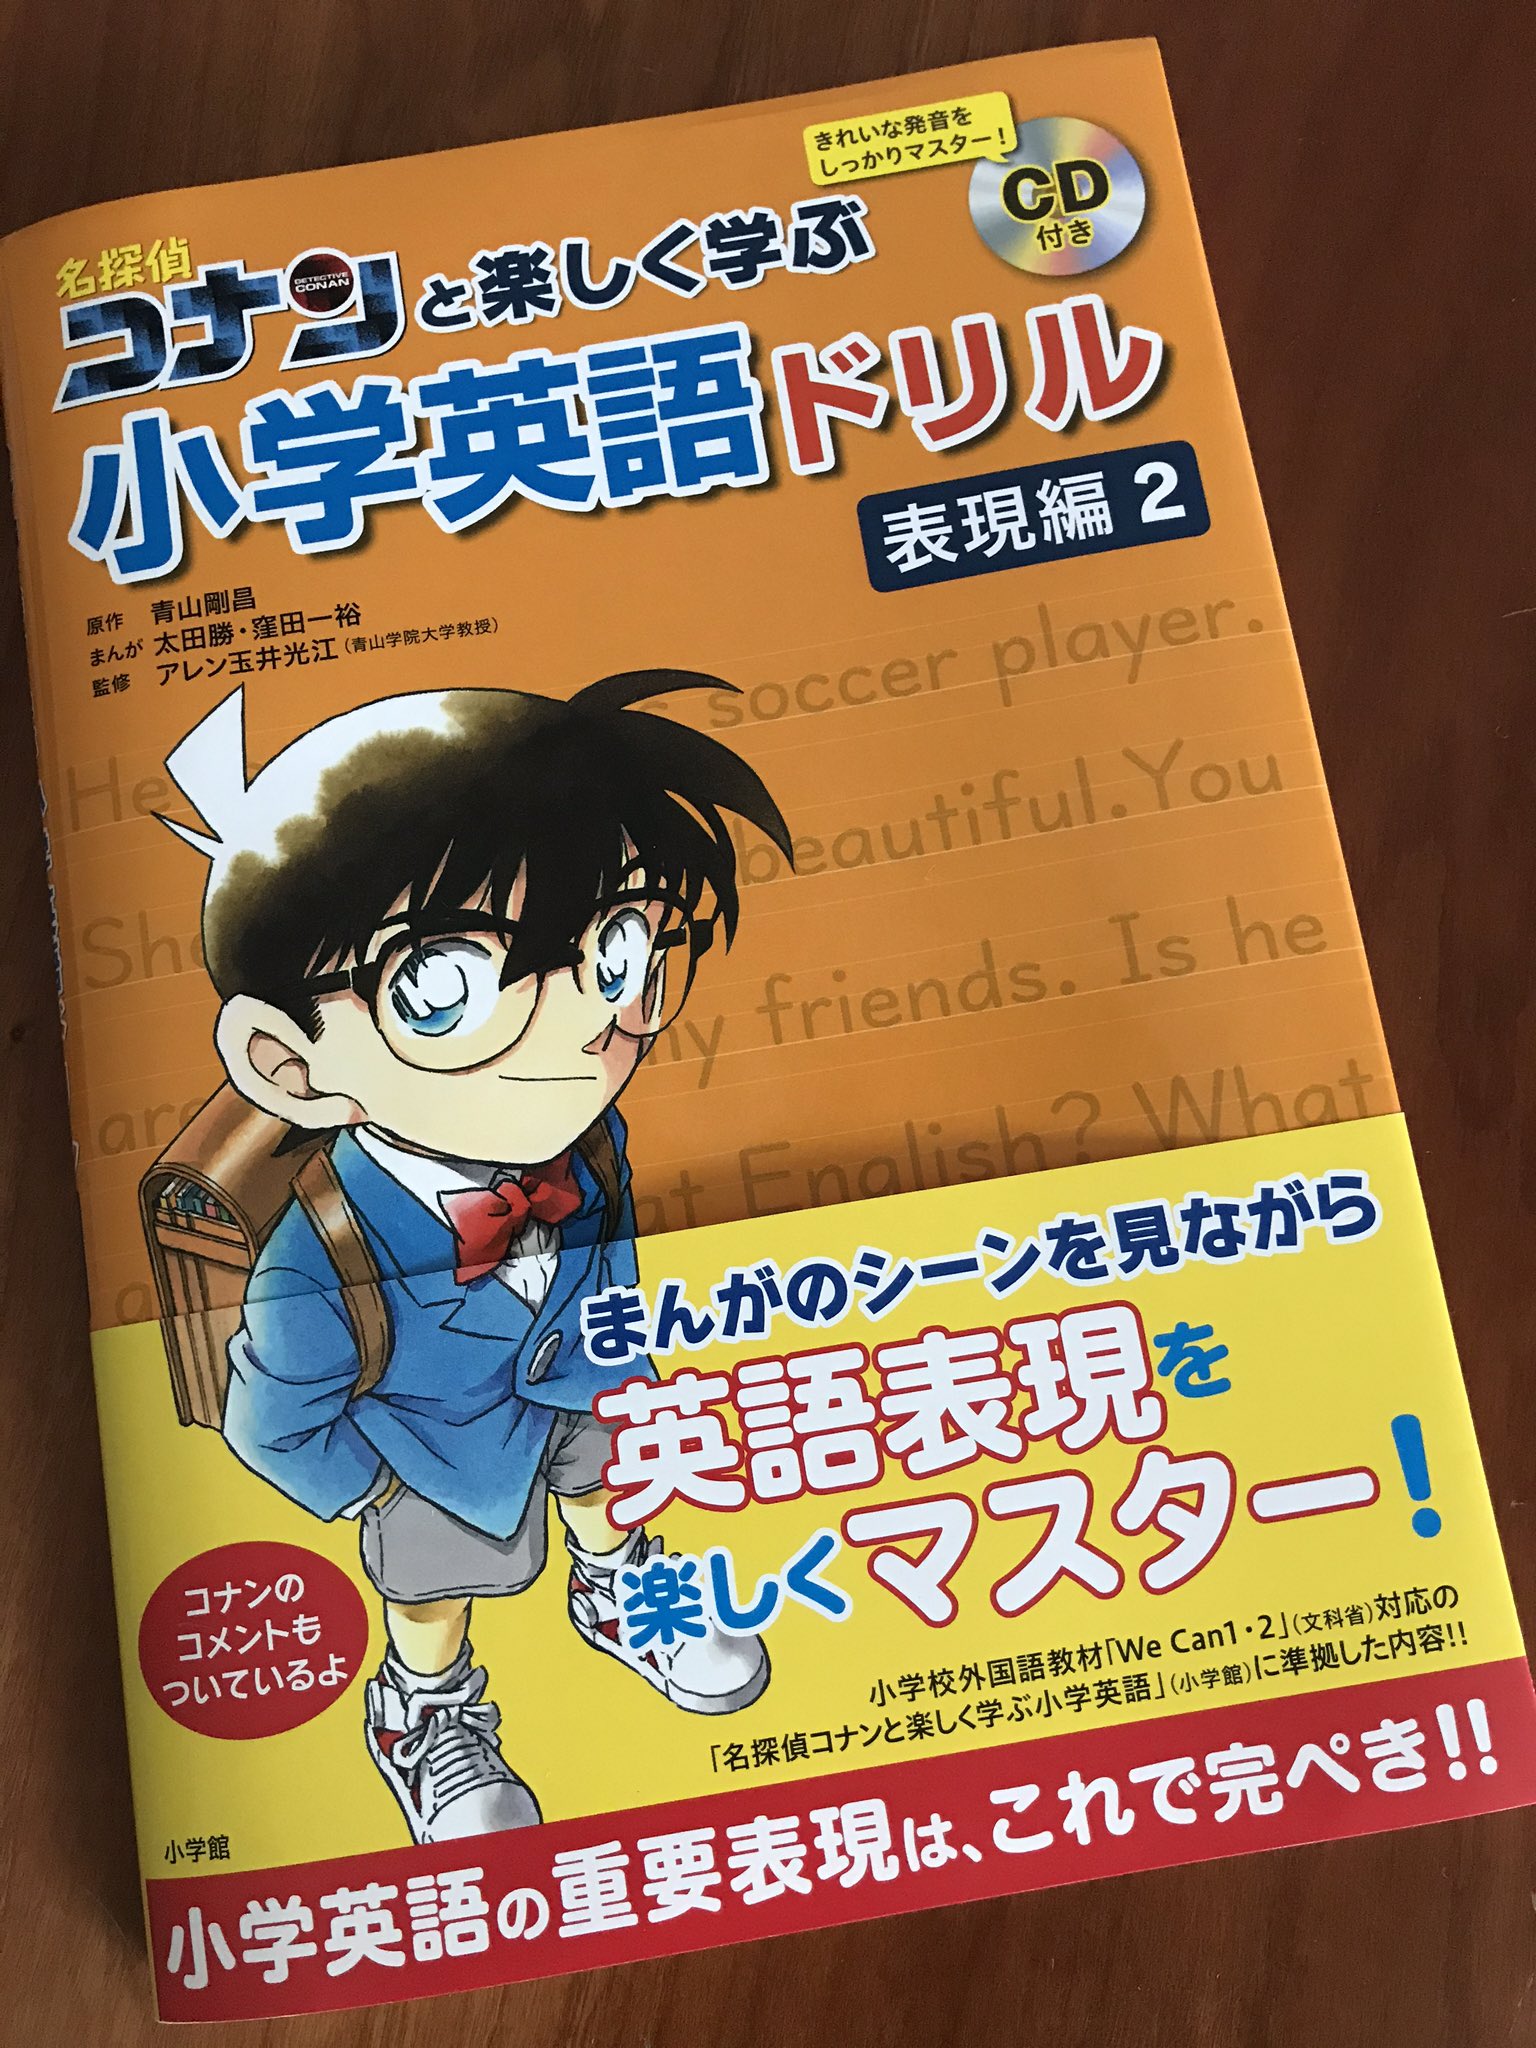 Airi 名探偵コナンと楽しく学ぶ小学英語ドリル 表現編2 小学館 発売になりました 日本語ナレーションを担当させていただきました Cdを聞いて 真似して 書いて 英語楽しい と感じるきっかけになったらうれしいなと思います 名探偵コナン